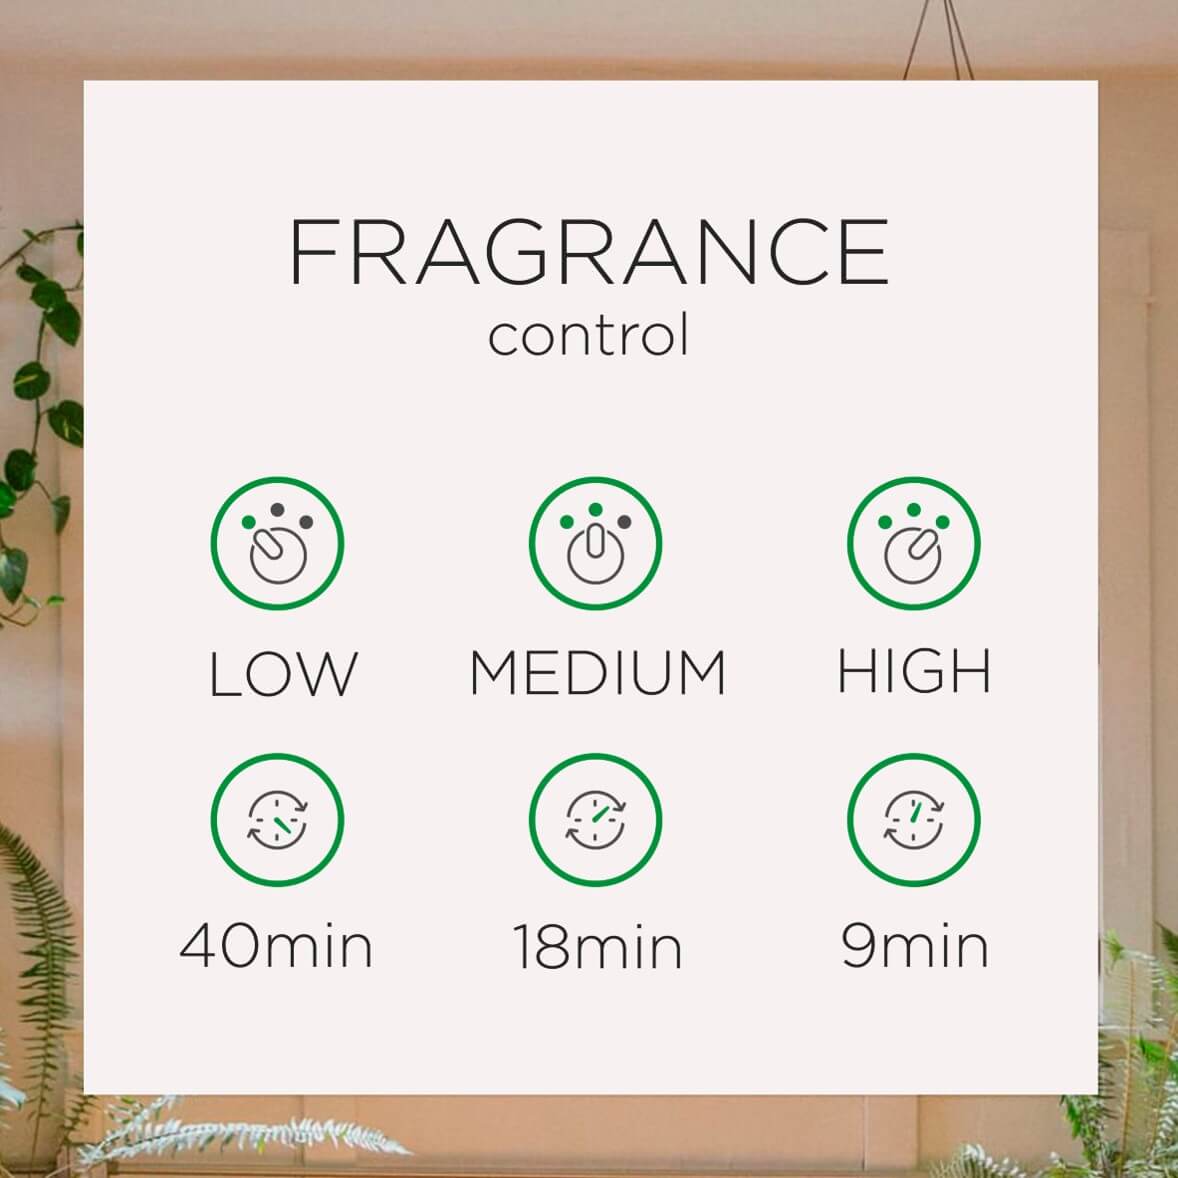 Fragrance-control.jpg